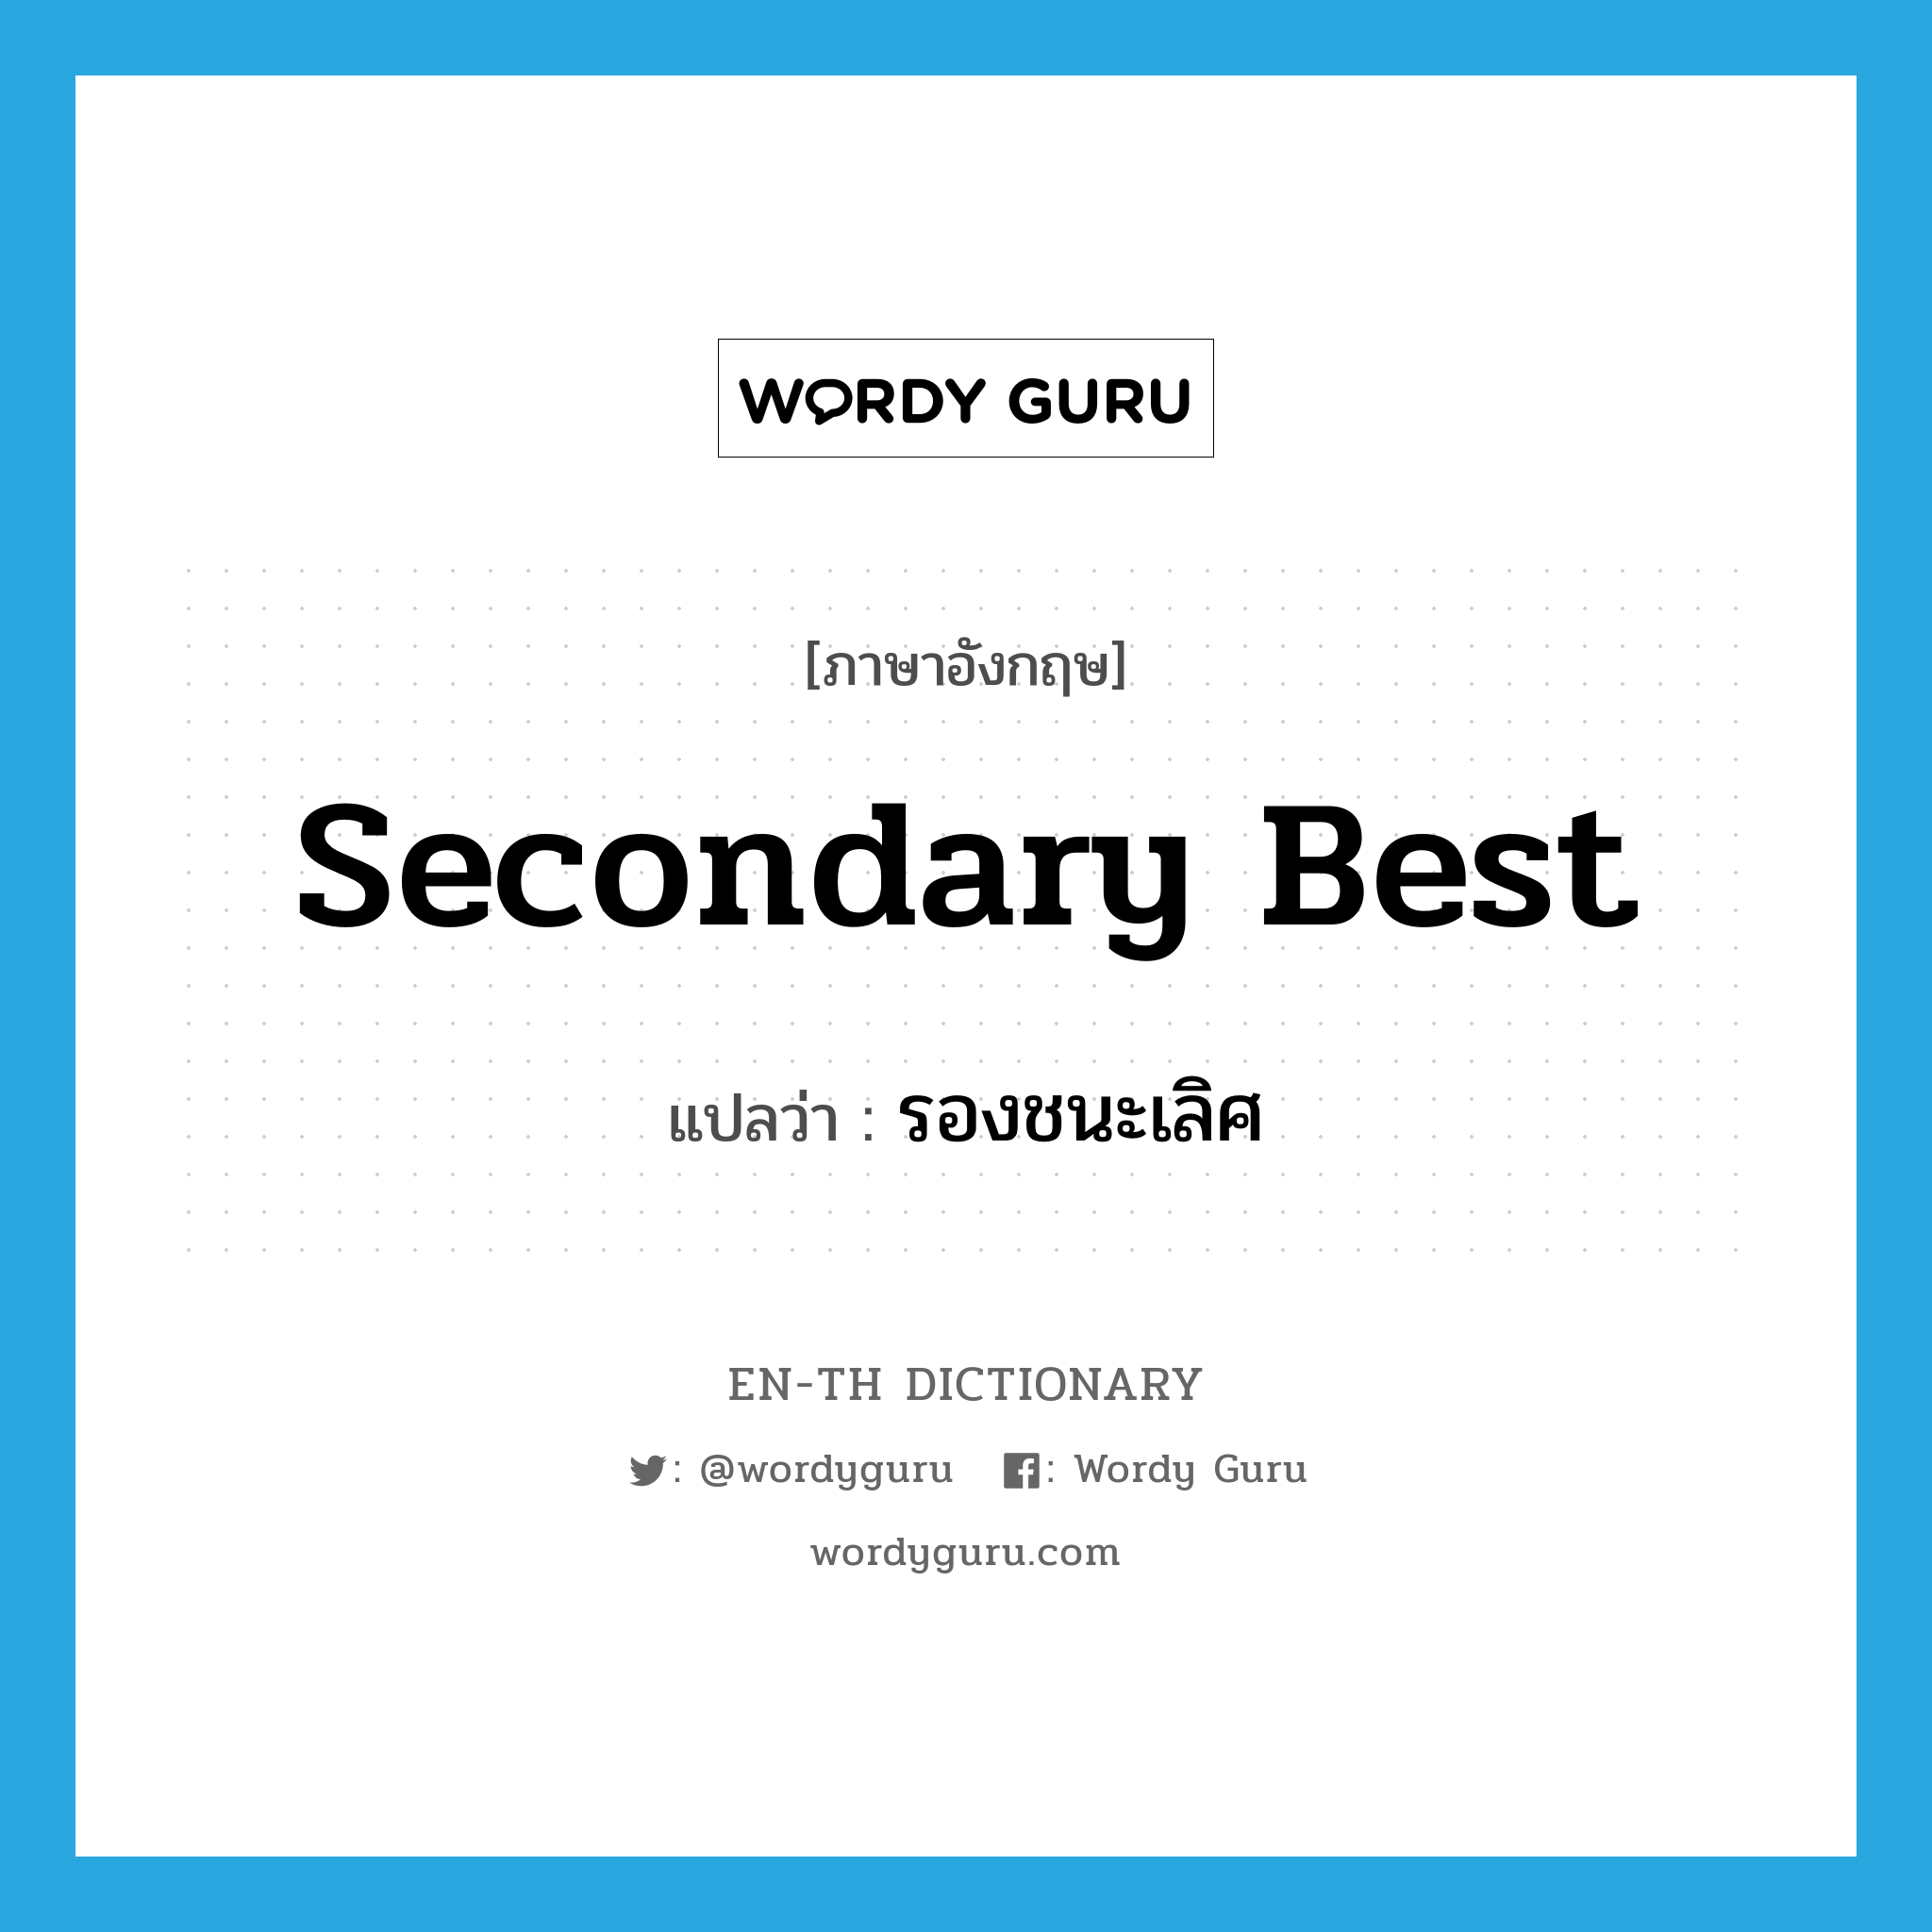 secondary best แปลว่า?, คำศัพท์ภาษาอังกฤษ secondary best แปลว่า รองชนะเลิศ ประเภท N หมวด N